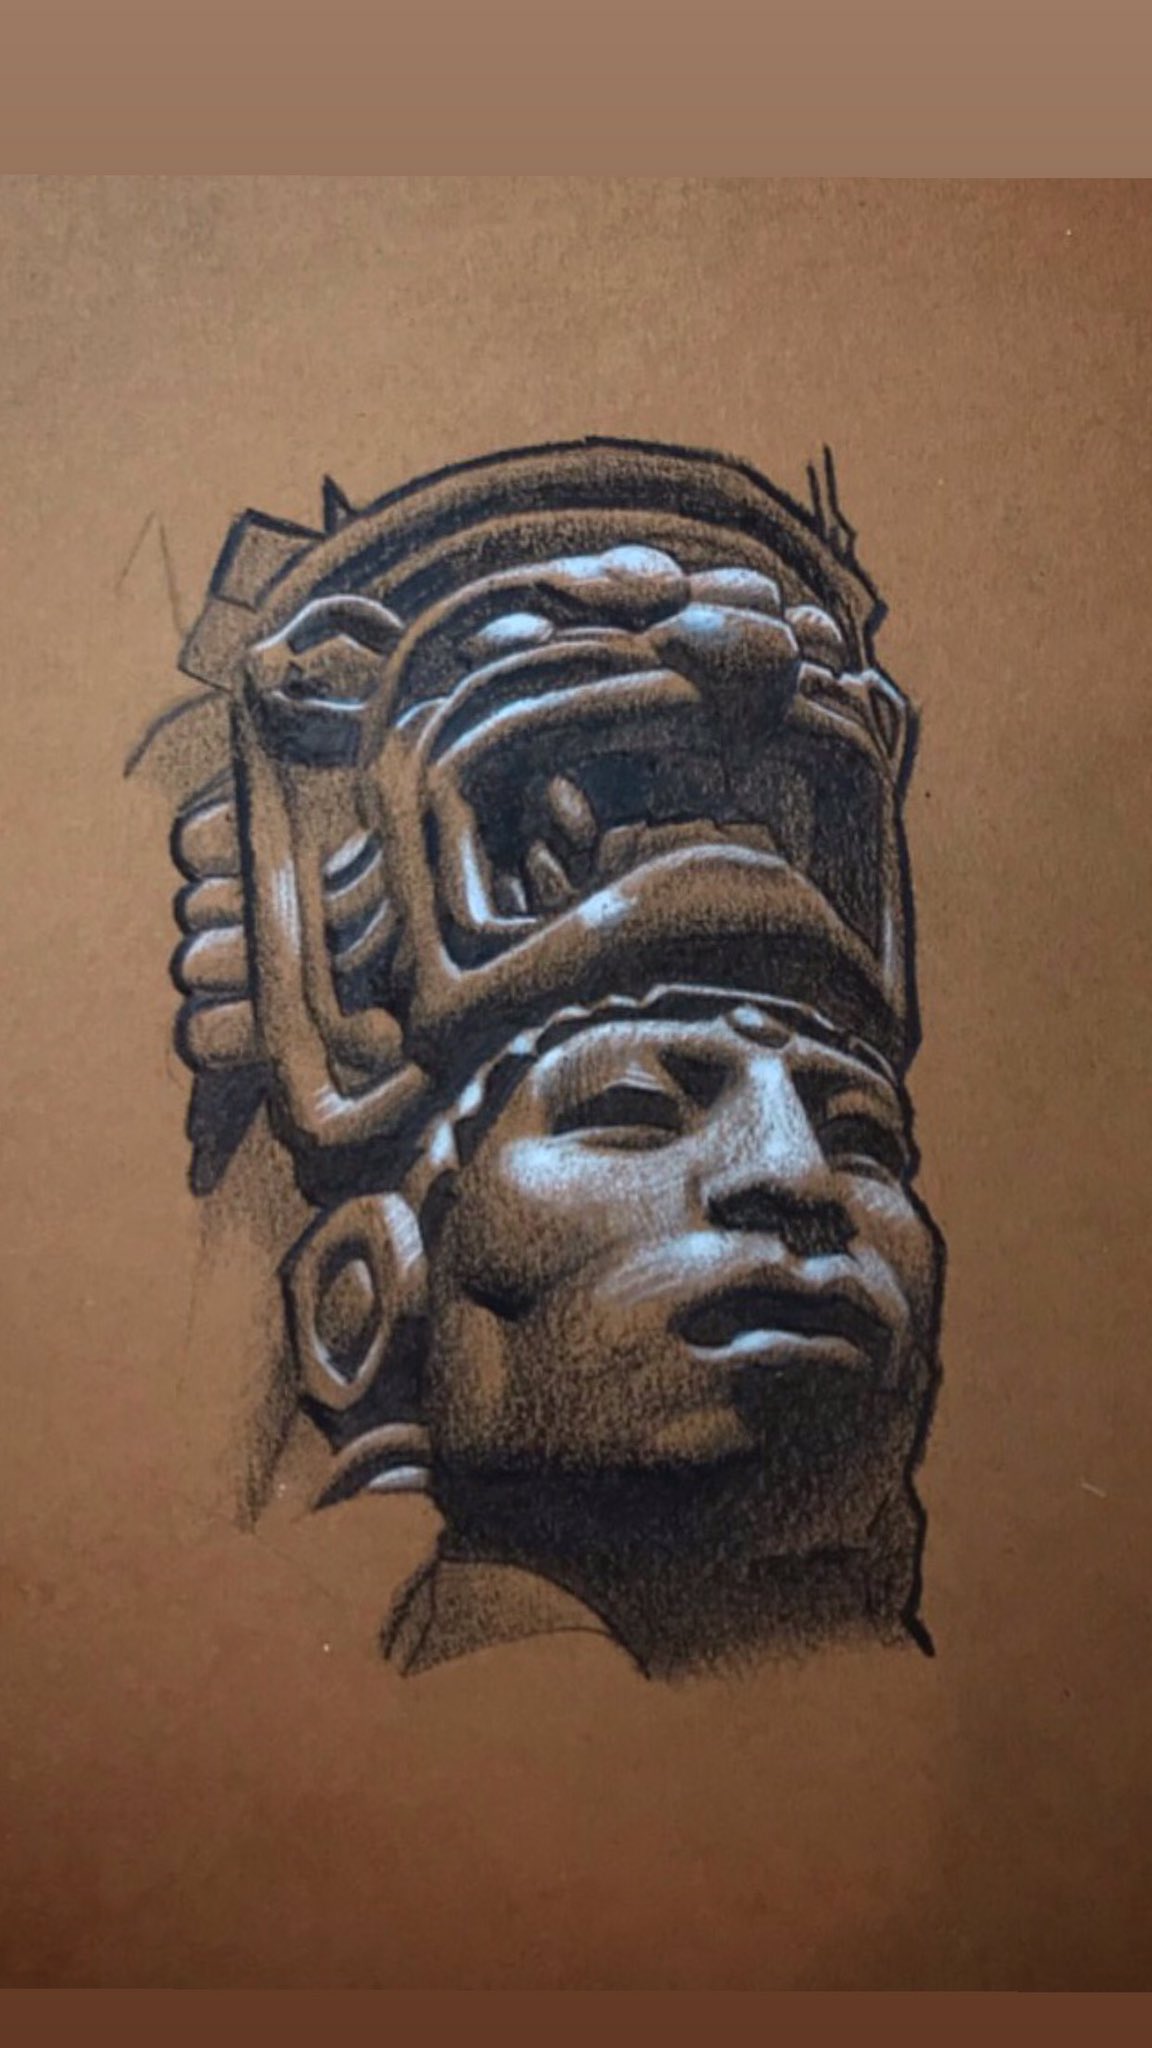 Aztec Warrior Face with Headdress Tattoo   AZTEC TATTOOS  Warvox Aztec  Mayan Inca Tattoo Designs